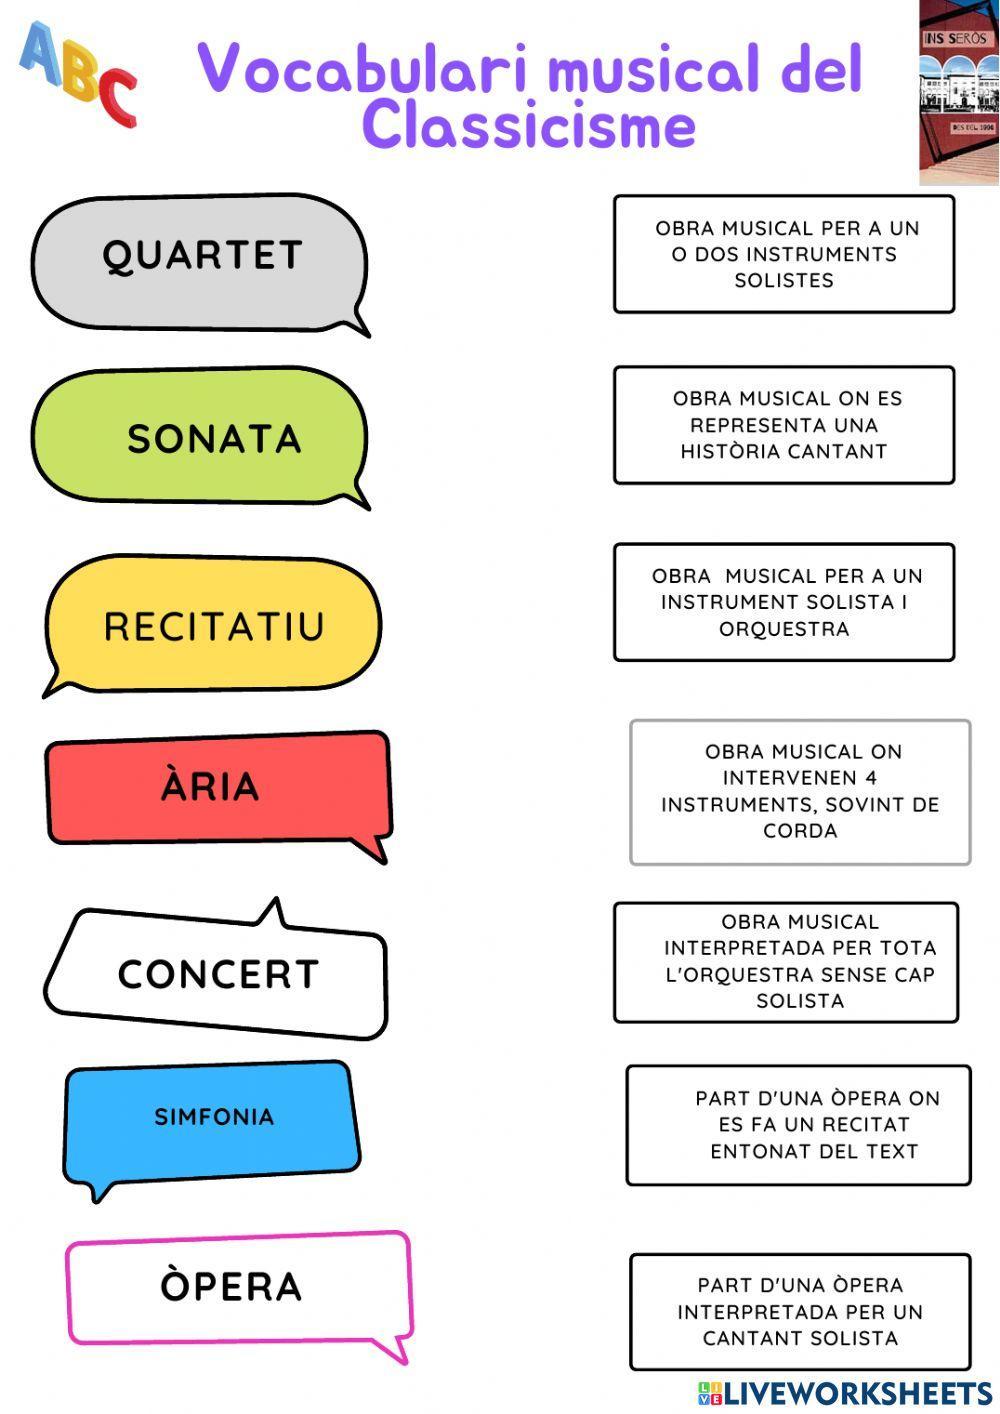 Vocabulari musical del Classicisme